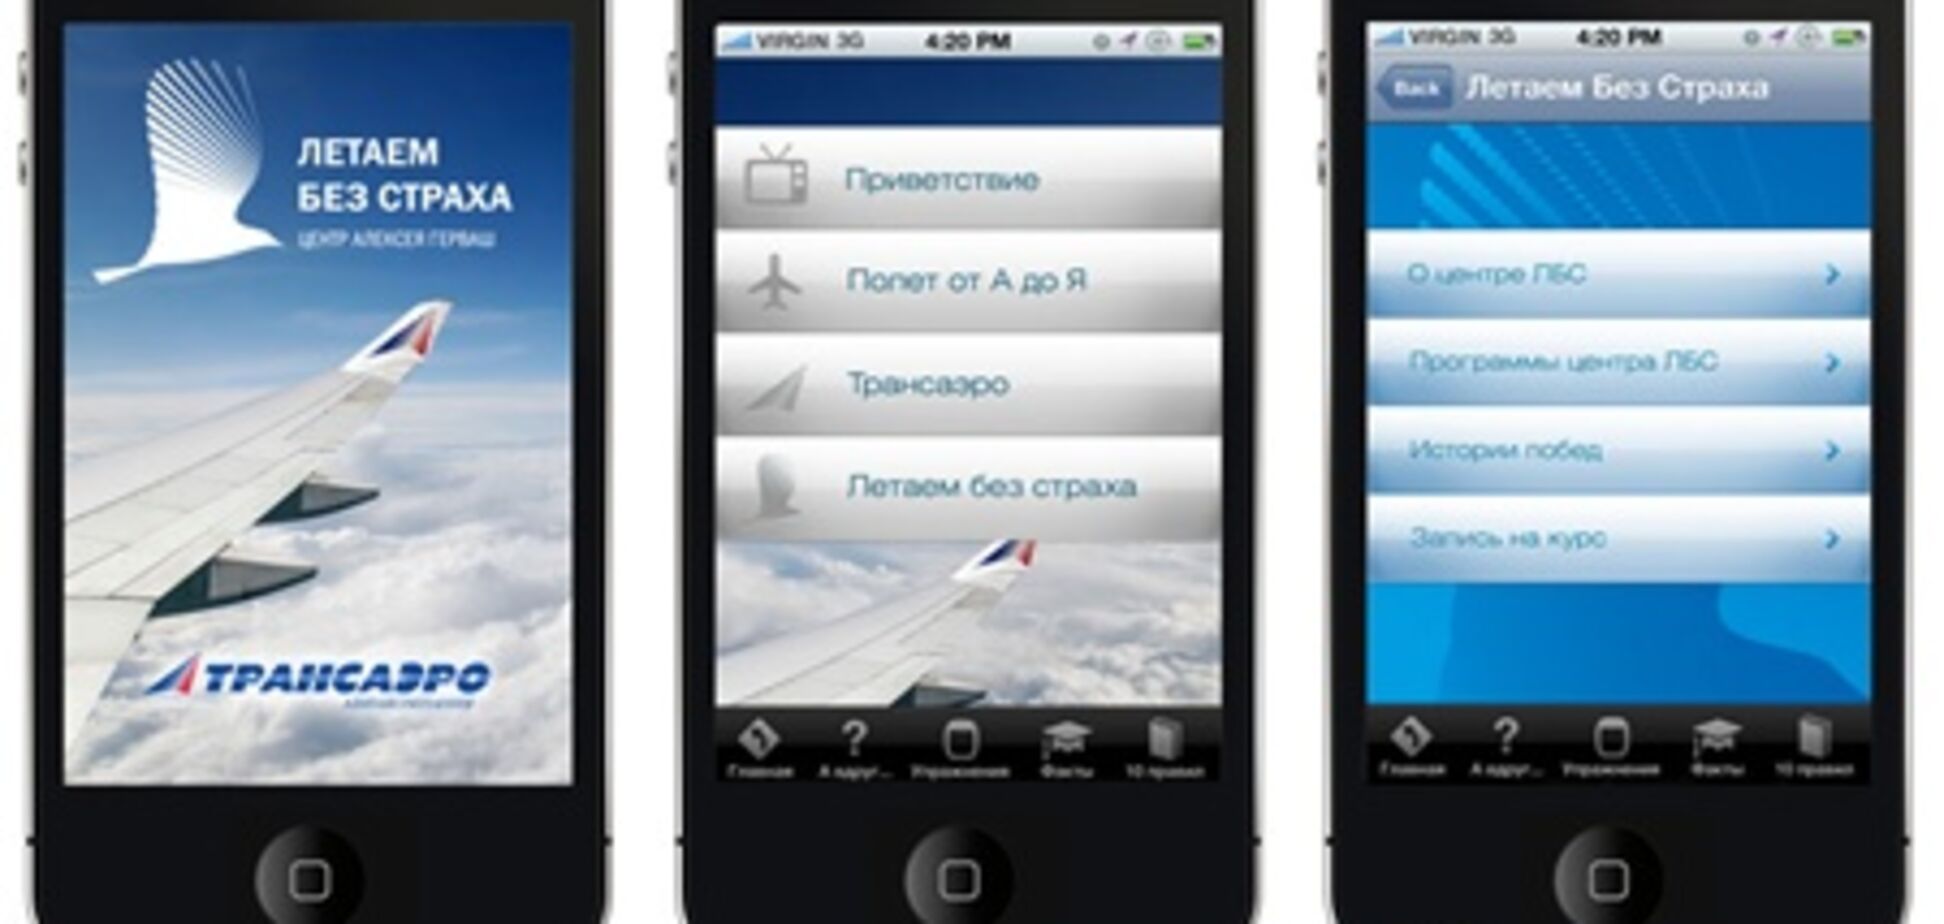 Появилось приложение для iPhone, призванное помочь аэрофобам